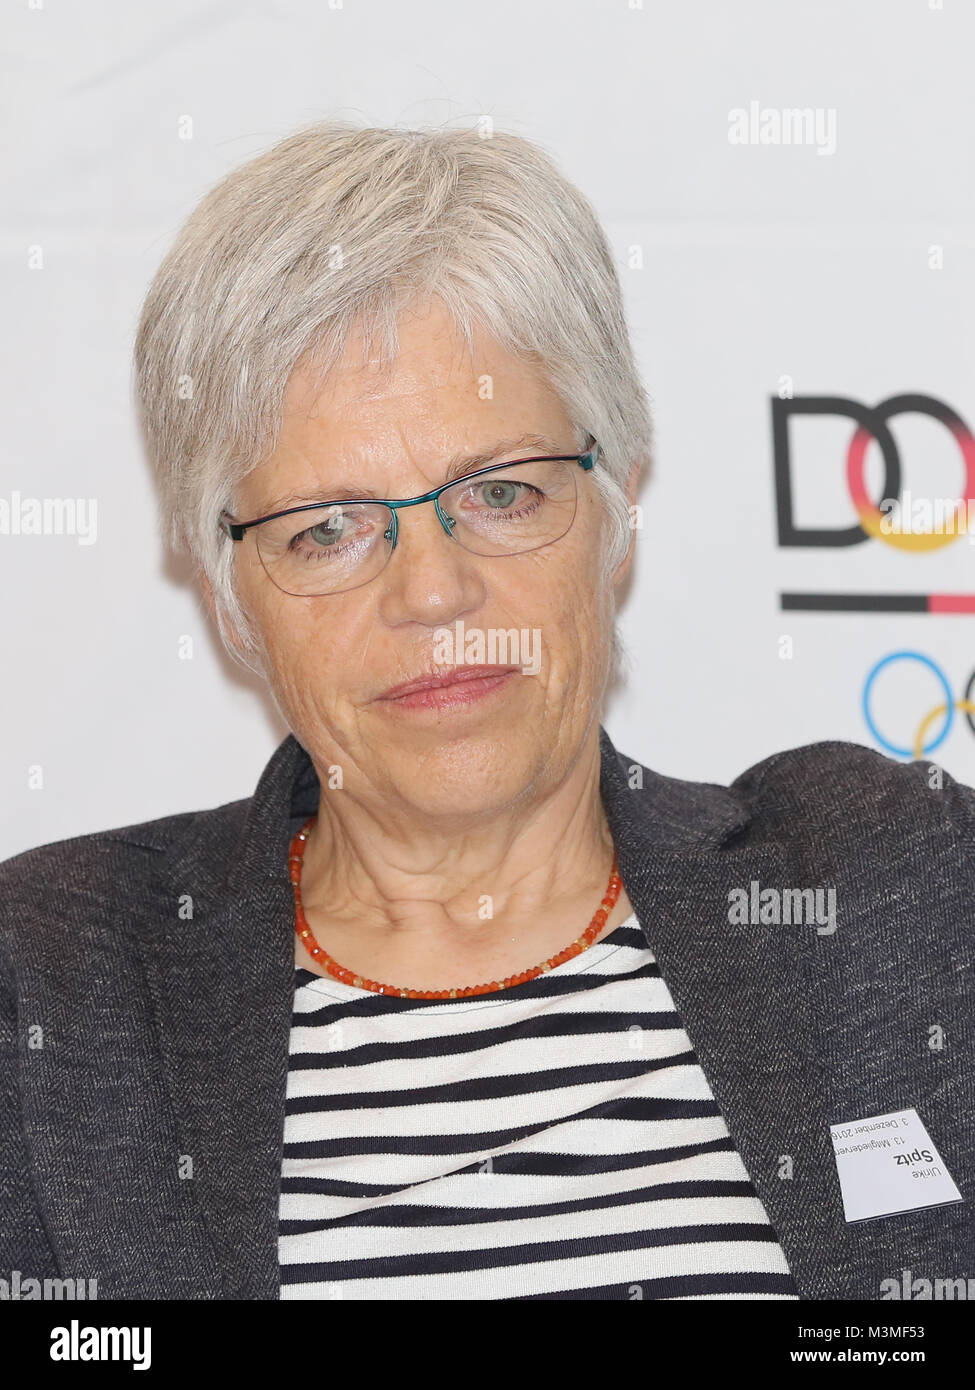 Pressesprecherin Deutscher Olympischer Sportbund (DOSB) Ulrike Spitz bei der 13.Mitgliederversammlung des DOSB am 03.12.2016 a Magdeburgo Foto Stock